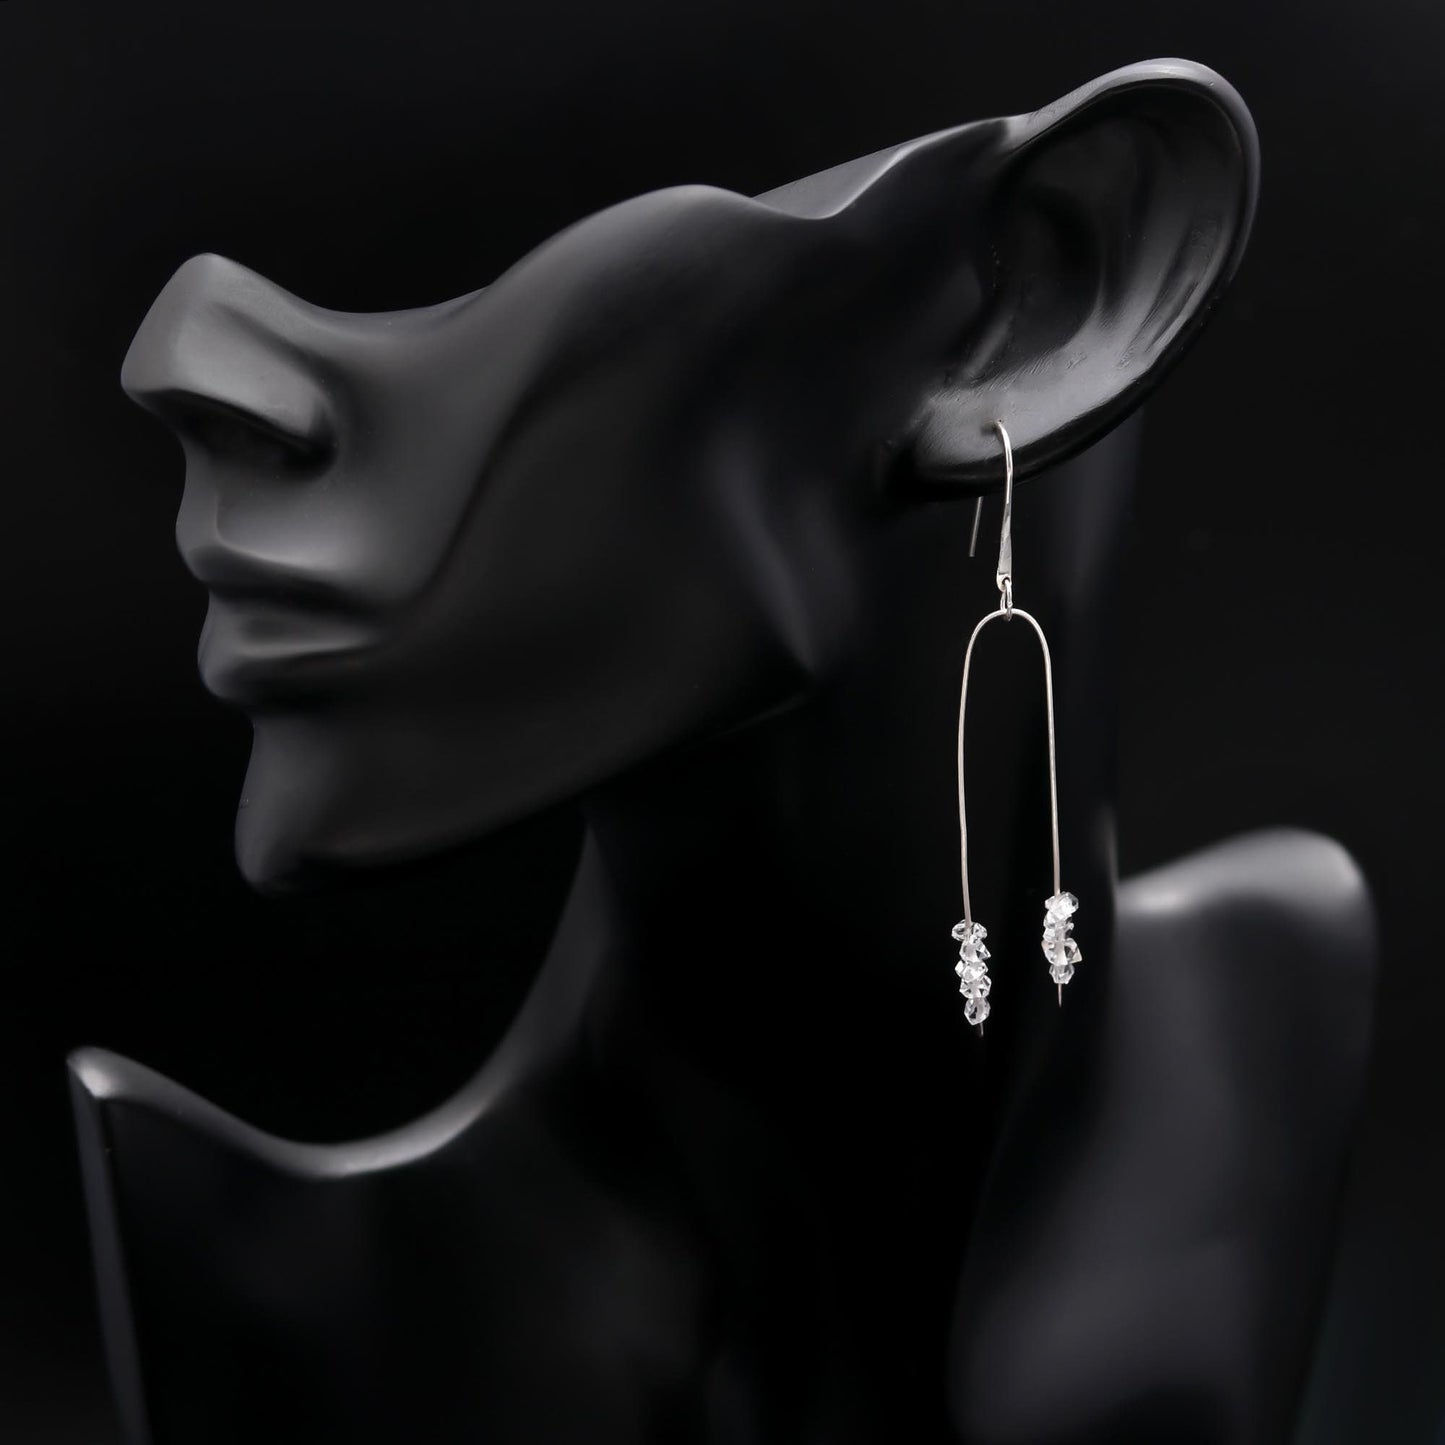 Herkimer Diamond Earrings. Raw Herkimer Dangle earrings Gift for her Birthday, wedding,April Birth Stone , Natural Diamond Herkimer Earrings